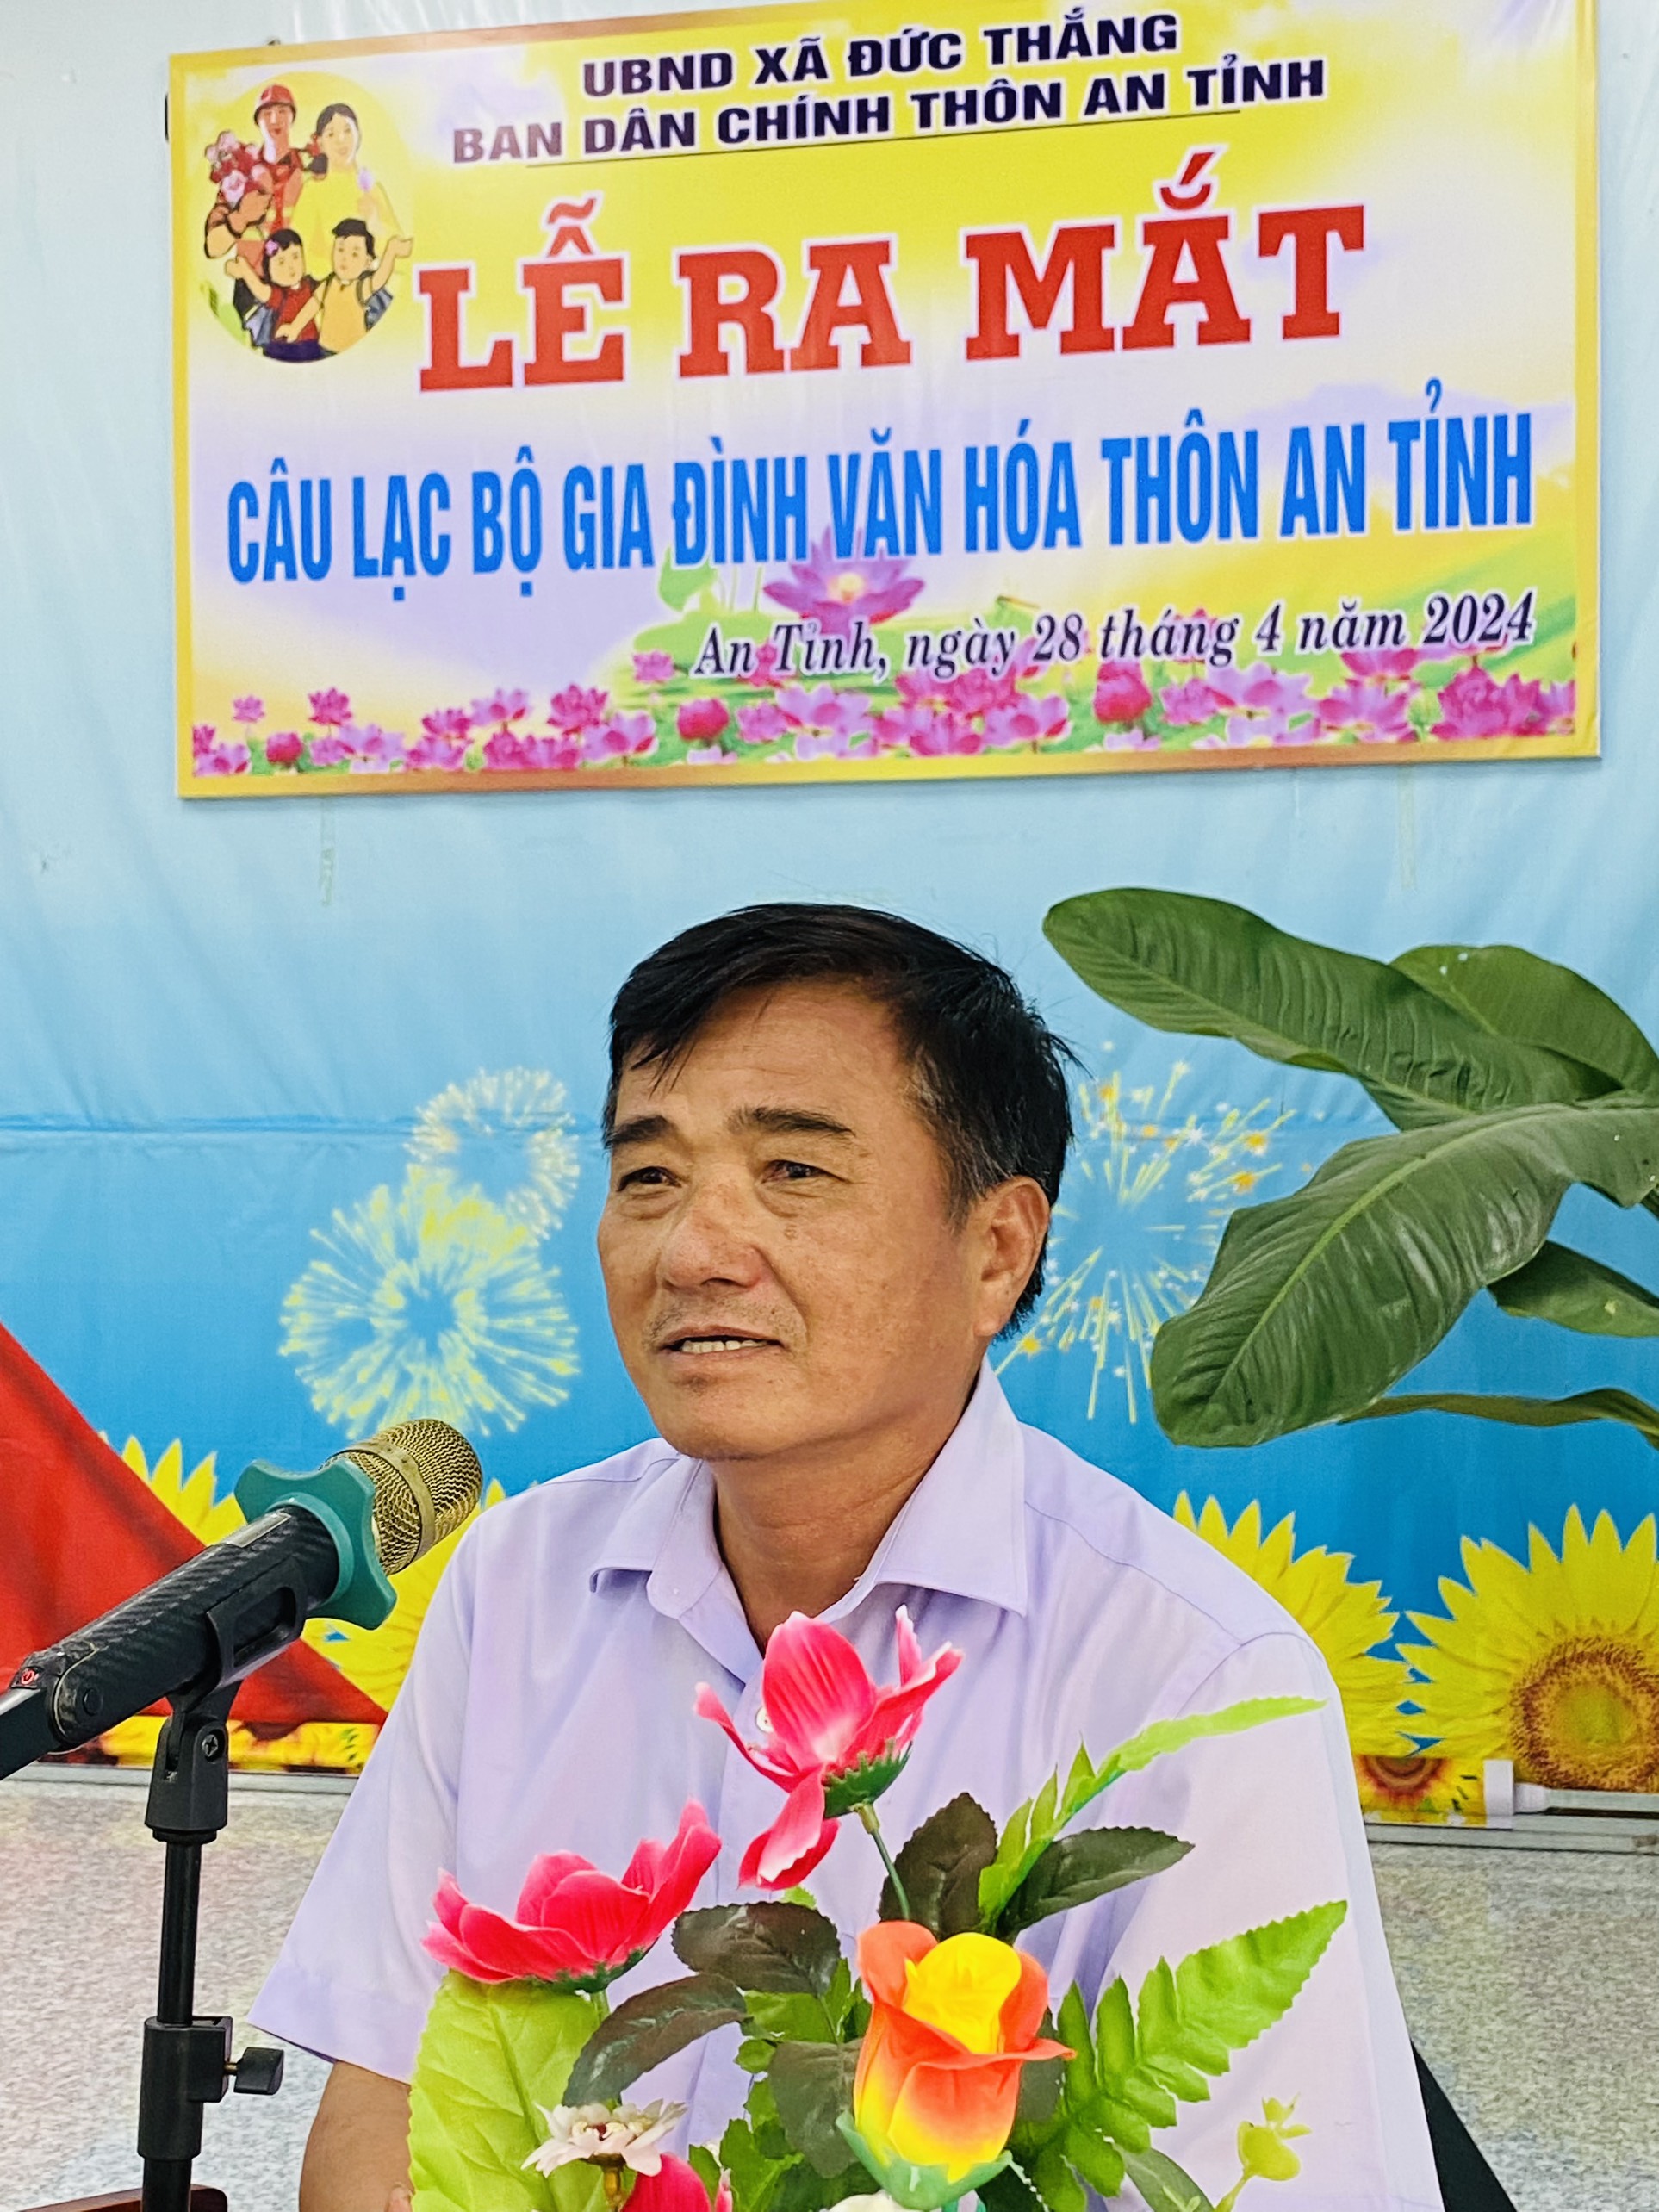 Đồng Chí Trần Như Hiệp- Bí Thư Đảng ủy xã phát biểu tại buổi ra mắt câu lạc bộ